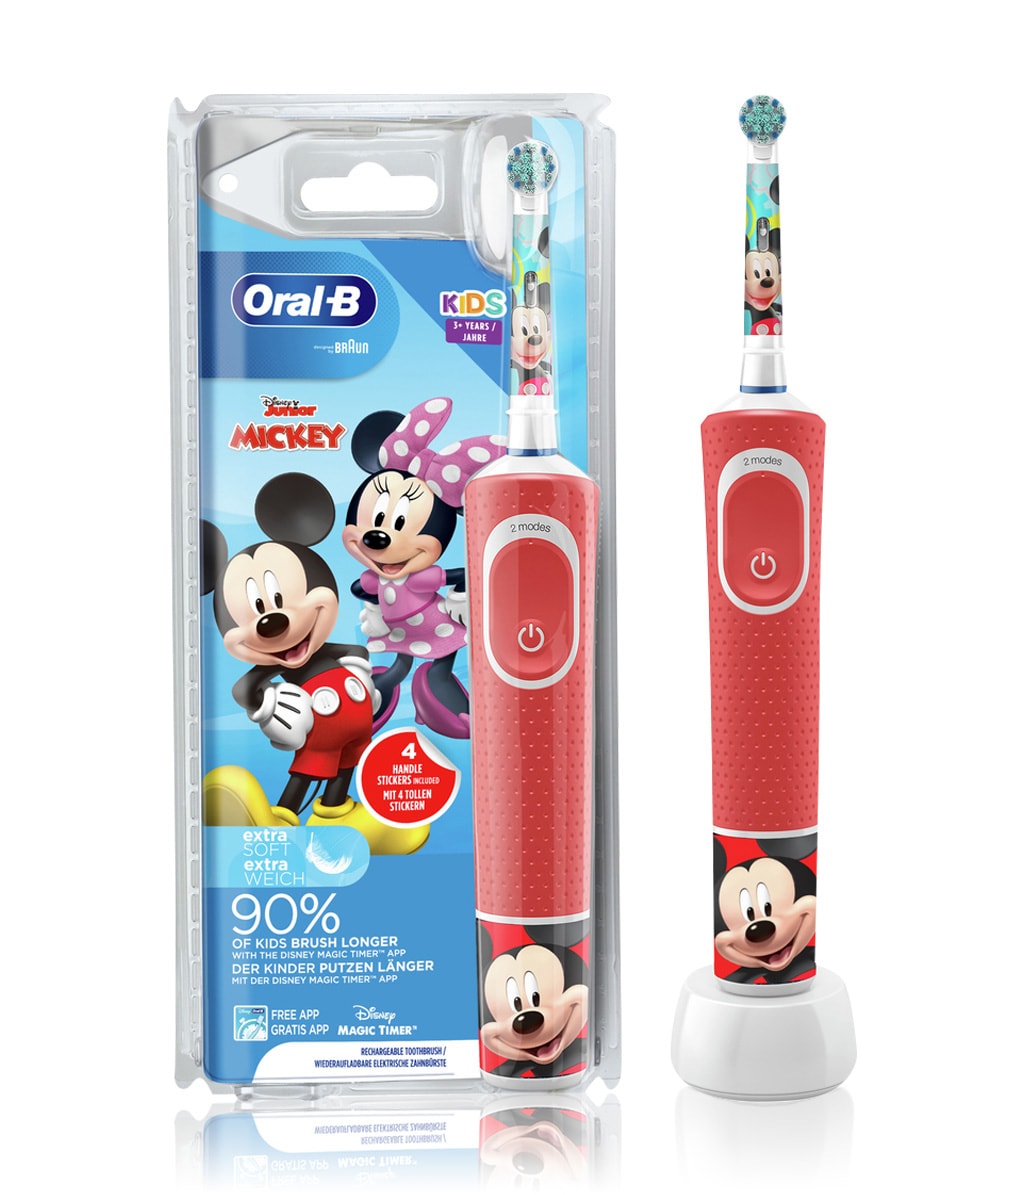 Artikel klicken und genauer betrachten! - Oral-B Kids Mickey Elektrische Zahnbürste für Kinder ab 3 Jahren, extra weiche Borsten, 2 Putzprogramme inkl. Sensitiv, Timer, 4 Mickey-Sticker, rot | im Online Shop kaufen